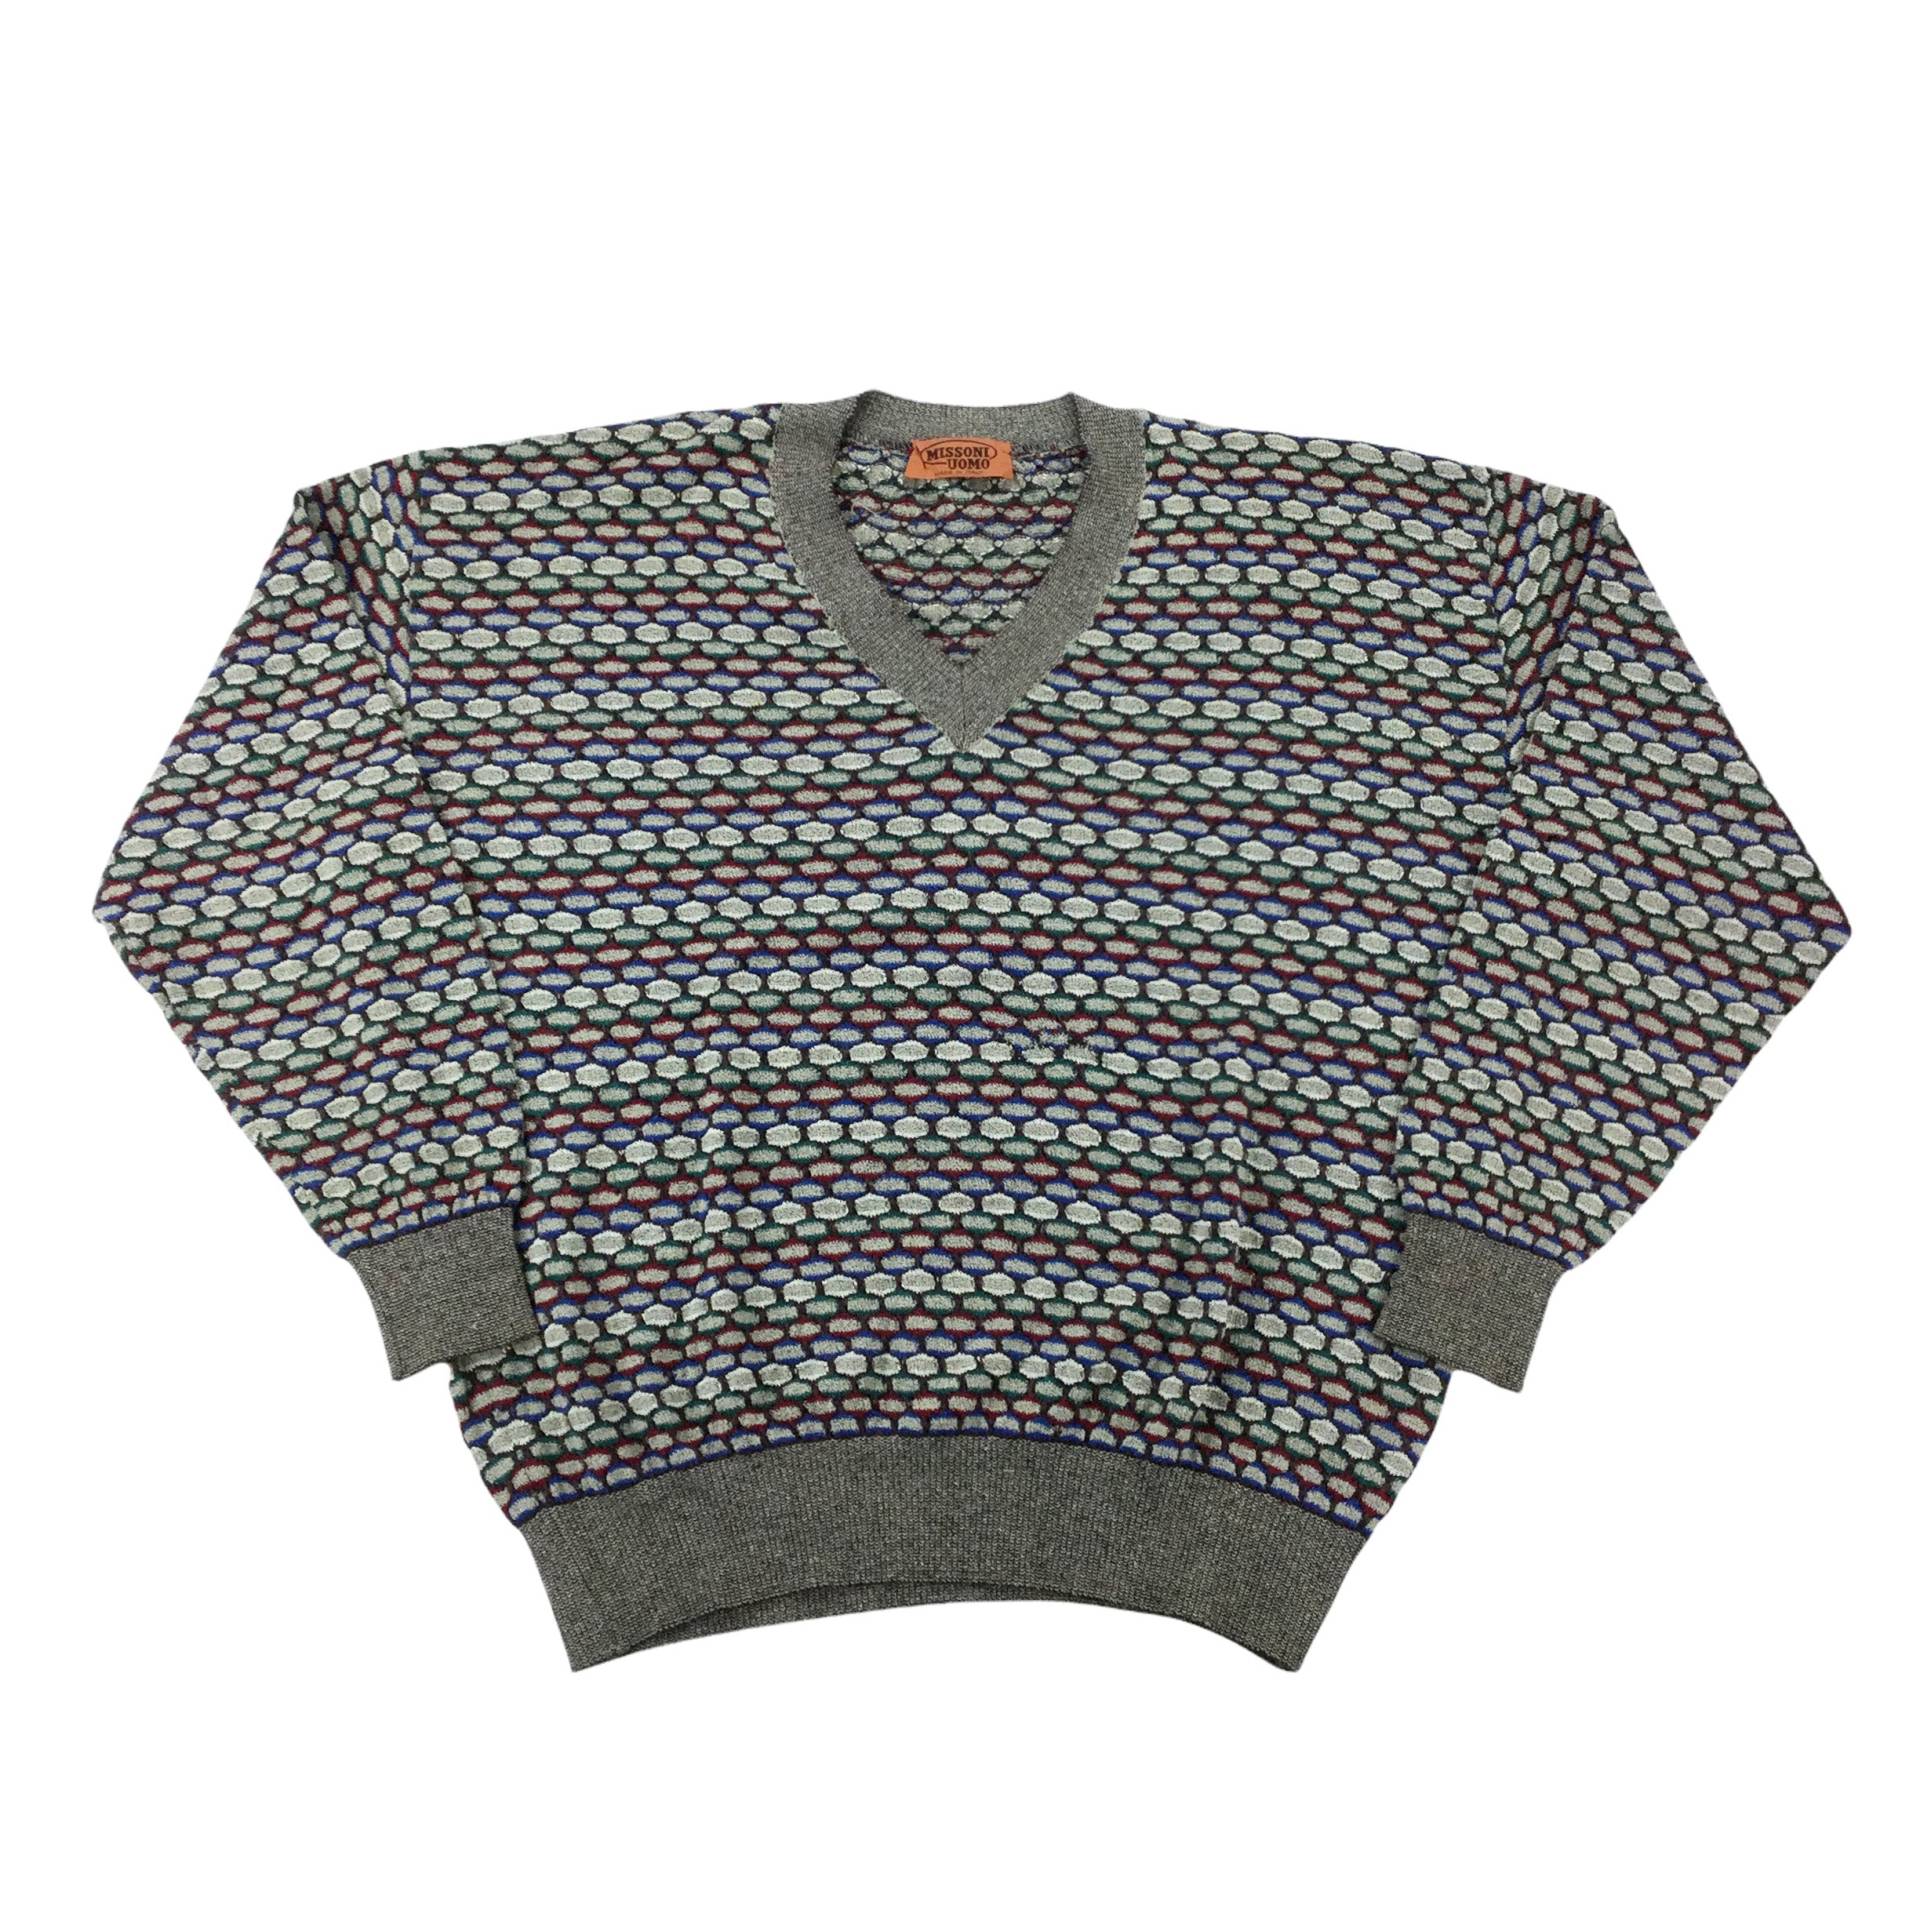 Vintage Missoni Sweatshirt - Large Size Männer Pullover Gebraucht von aloisstudio